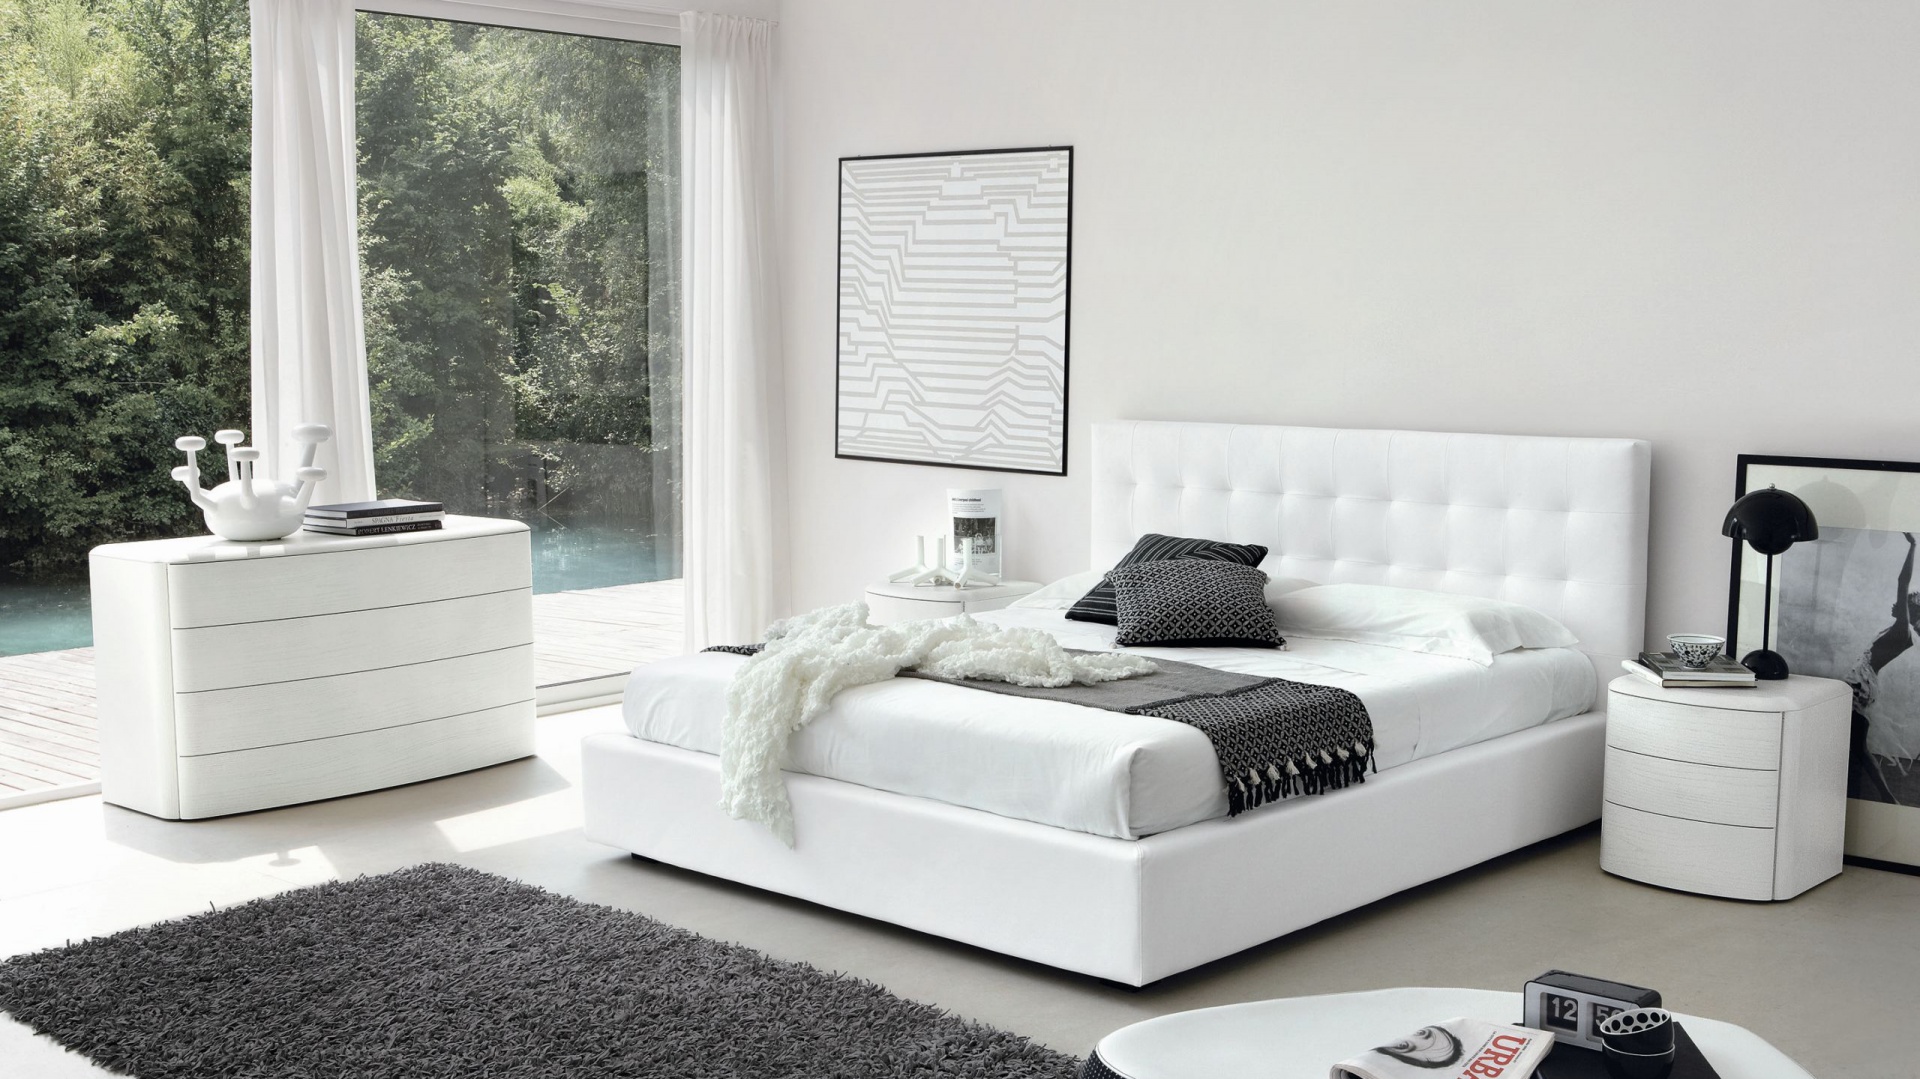 Мебель спальни белый цвет. Интерьер белой спальни. Спальня с белой кроватью. Кровать в интерьере спальни. Спальня в белом стиле.